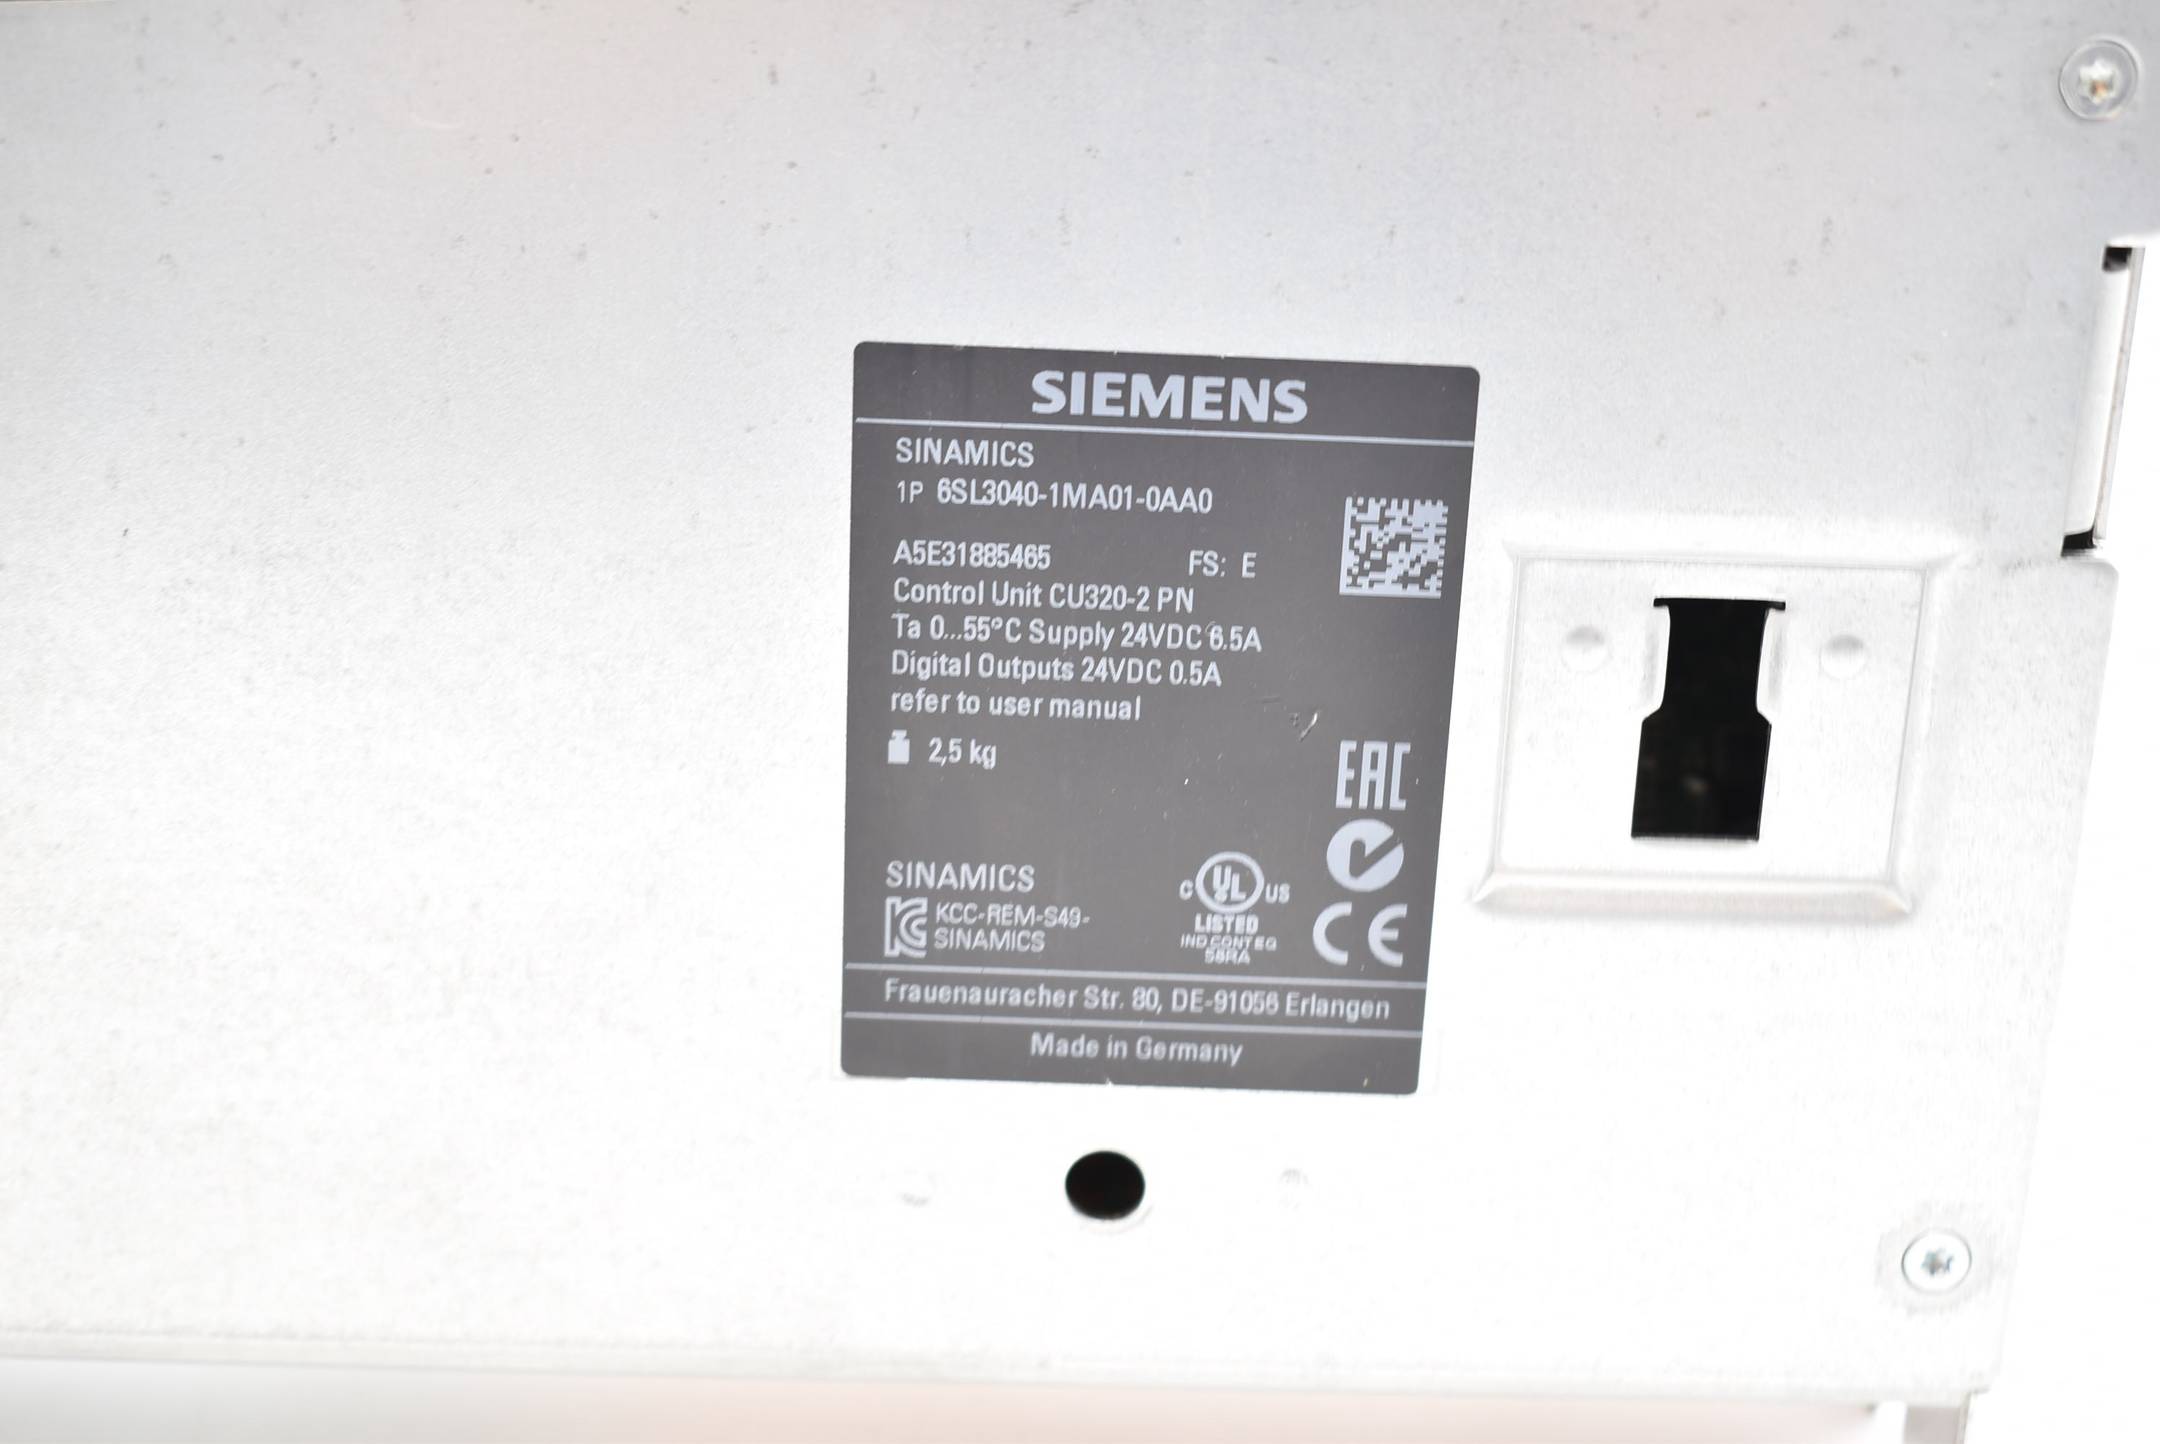 Siemens sinamics CU320-2 PN 6SL3040-1MA01-0AA0 ( 6SL3 040-1MA01-0AA0 ) FS.E